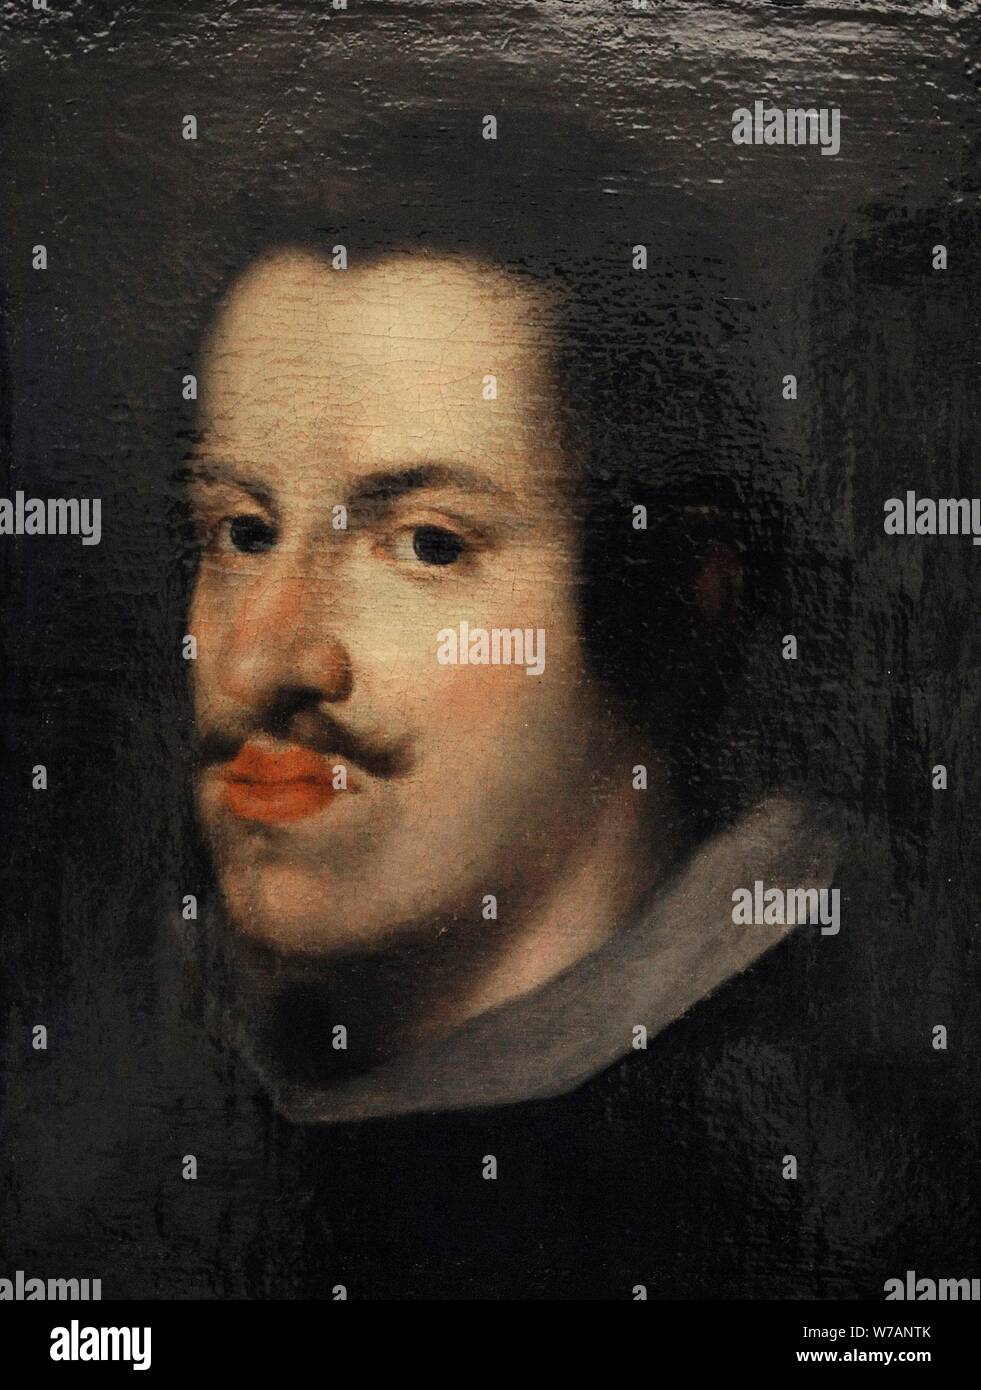 Felipe IV (1605-1665). Rey de España (1621-1665). Retrato por el Círculo de Diego Rodríguez de Silva y Velázquez (1599-1660), hacia 1630-1635. Museo de Historia. Madrid. España. Stock Photo